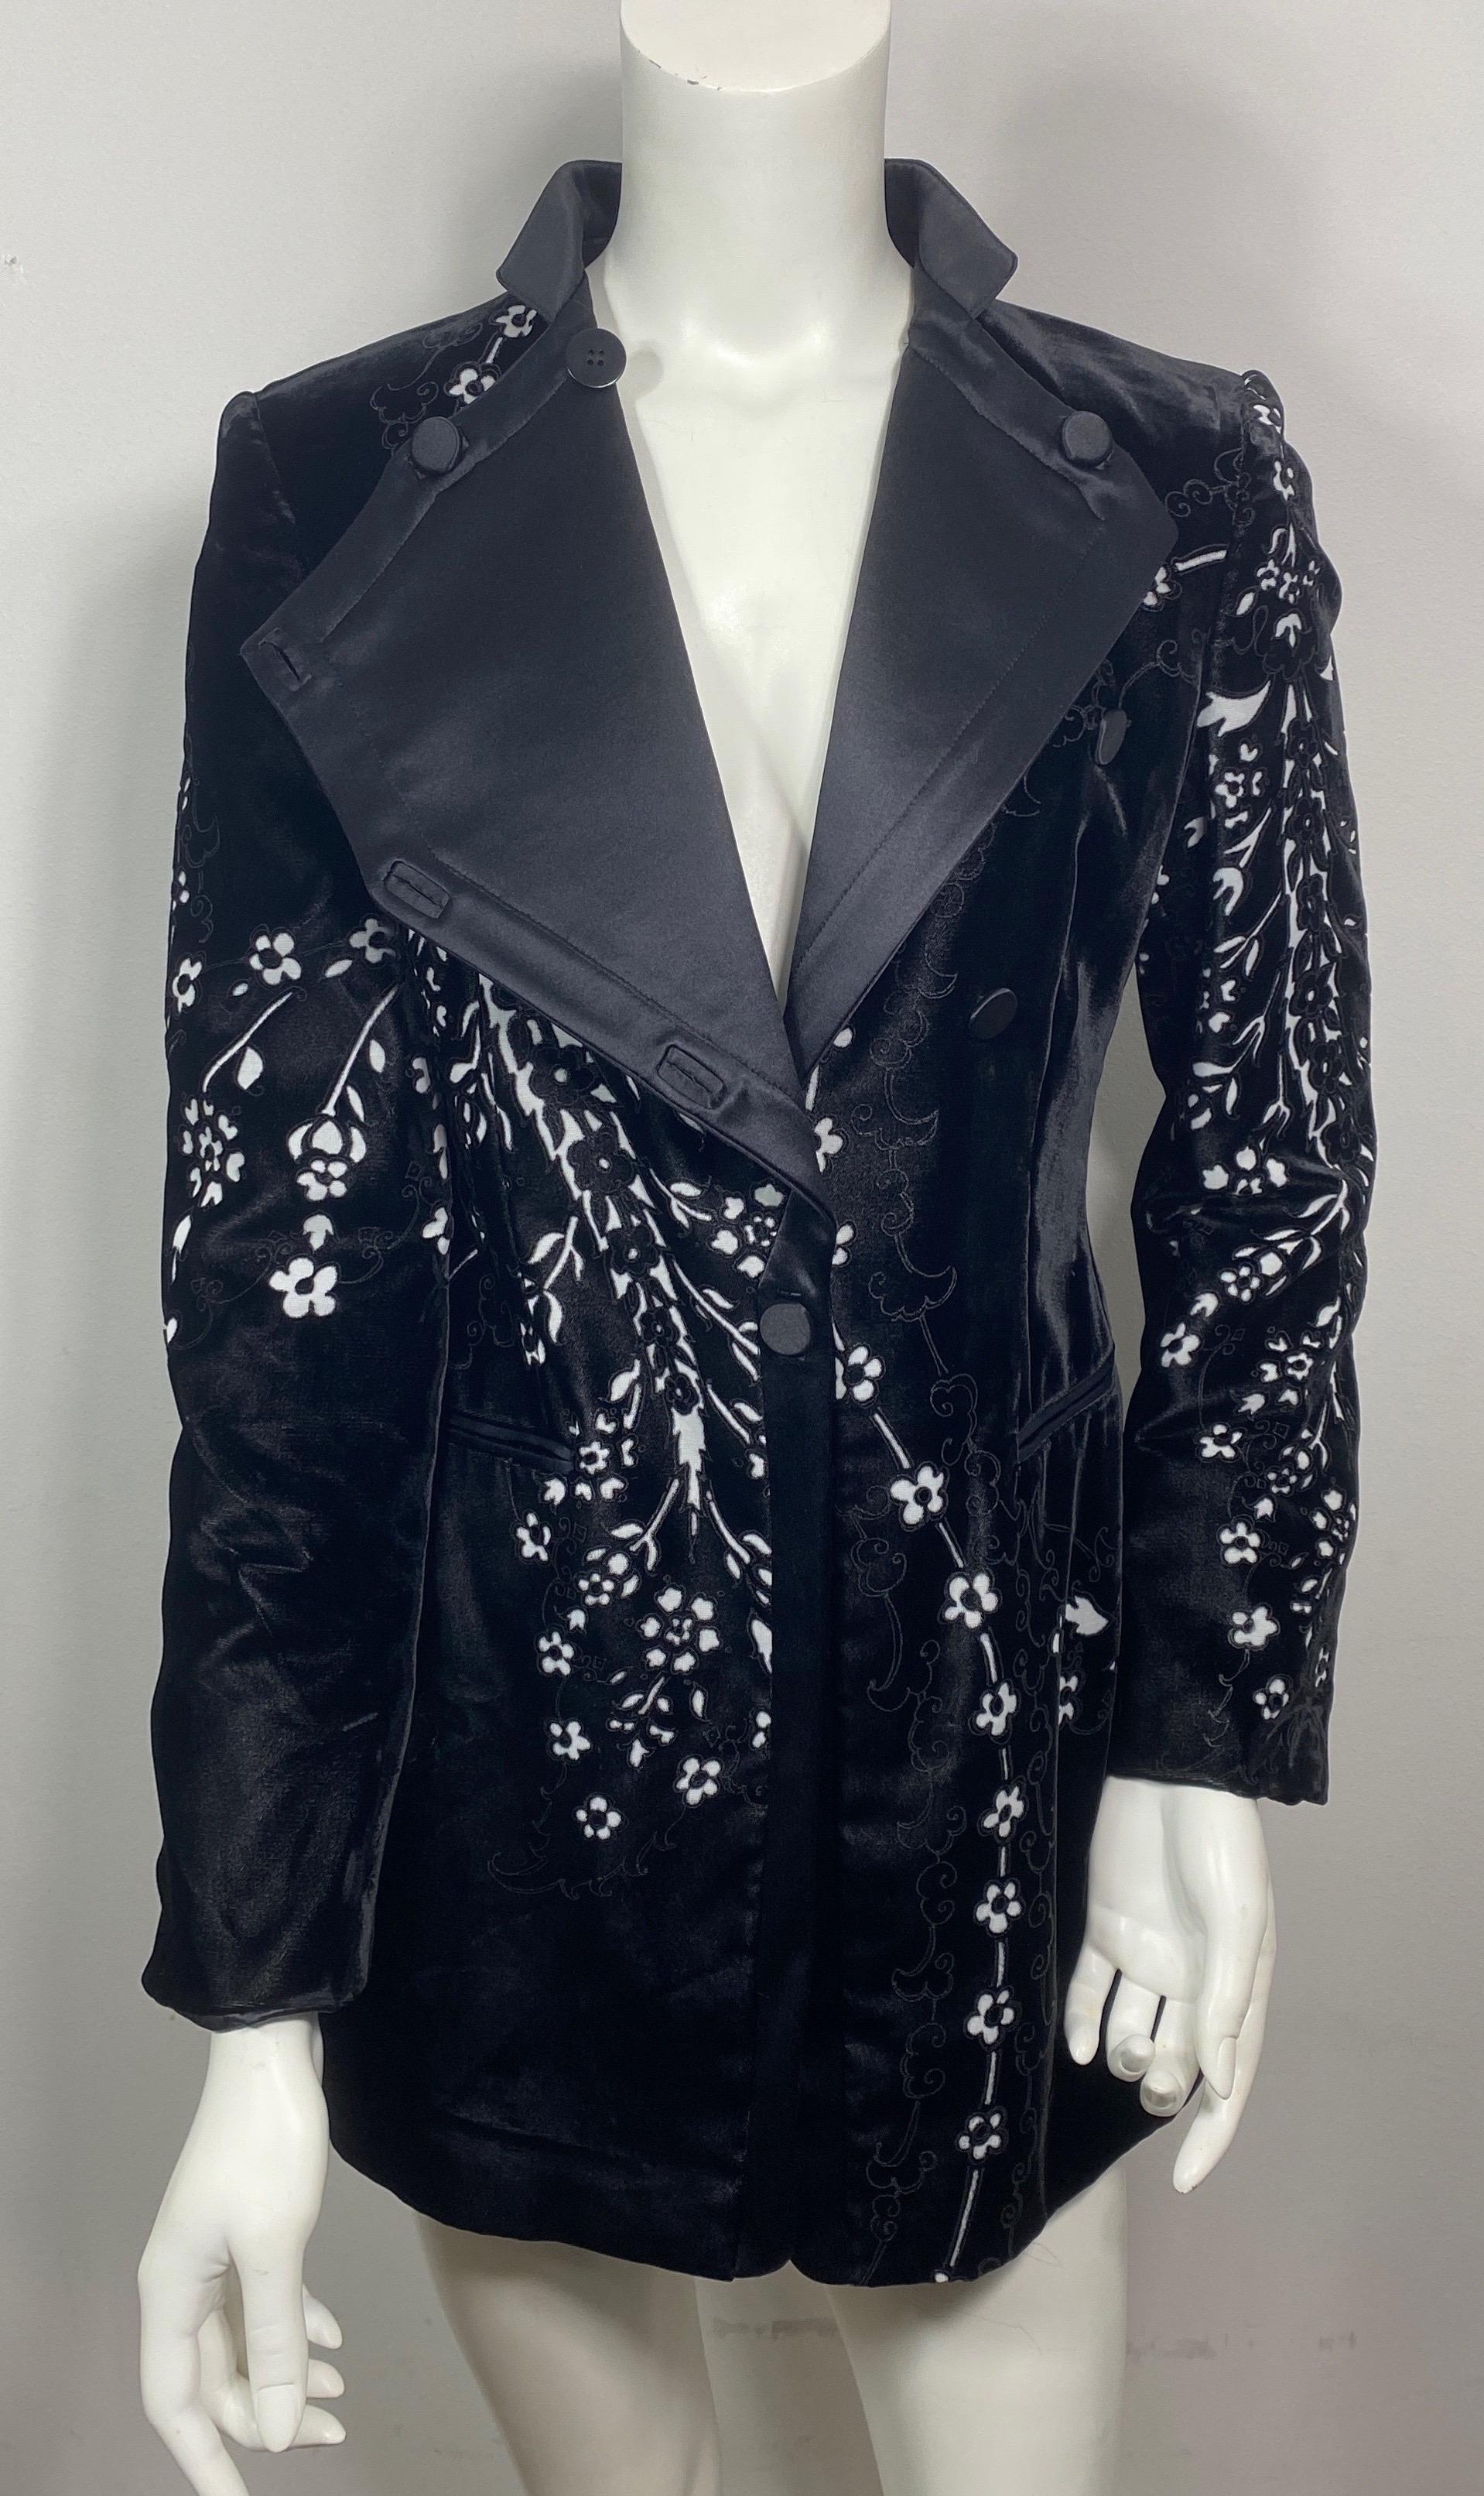 Giorgio Armani Black Velvet Cutout Jacket-Größe 38 Diese Jacke hat einen schwarzen Satinkragen, der auf verschiedene Weise getragen werden kann. Öffnen Sie es knöpft an ein paar Stellen und gibt der Jacke zwei große Revers. Es kann auch geschlossen